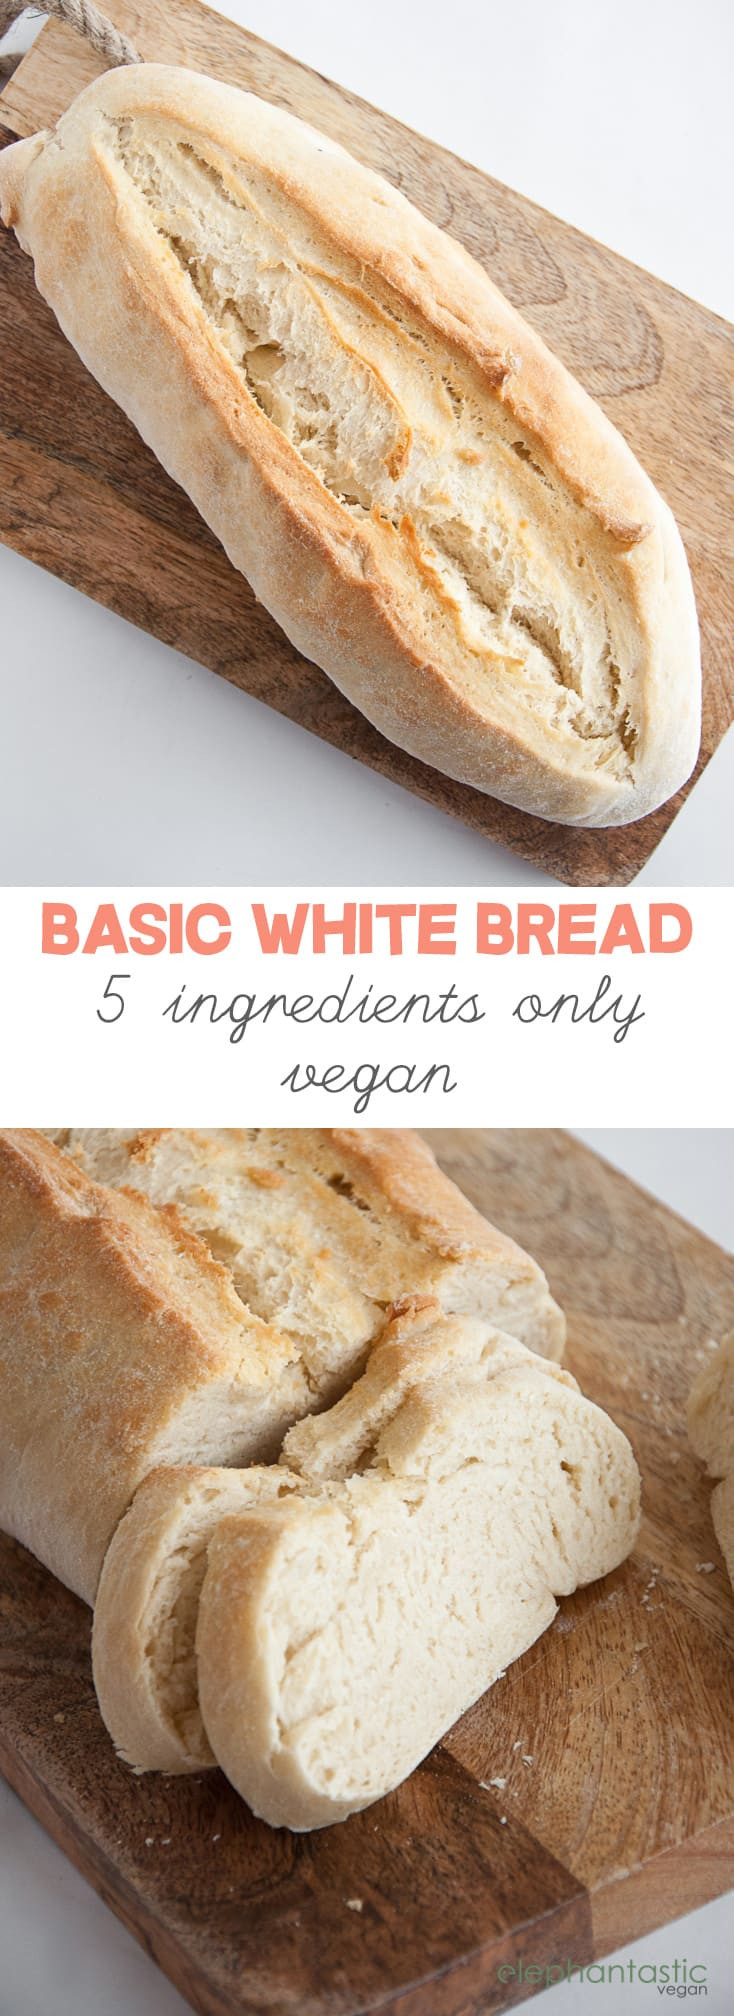 Is White Bread Vegan
 Basic White Bread